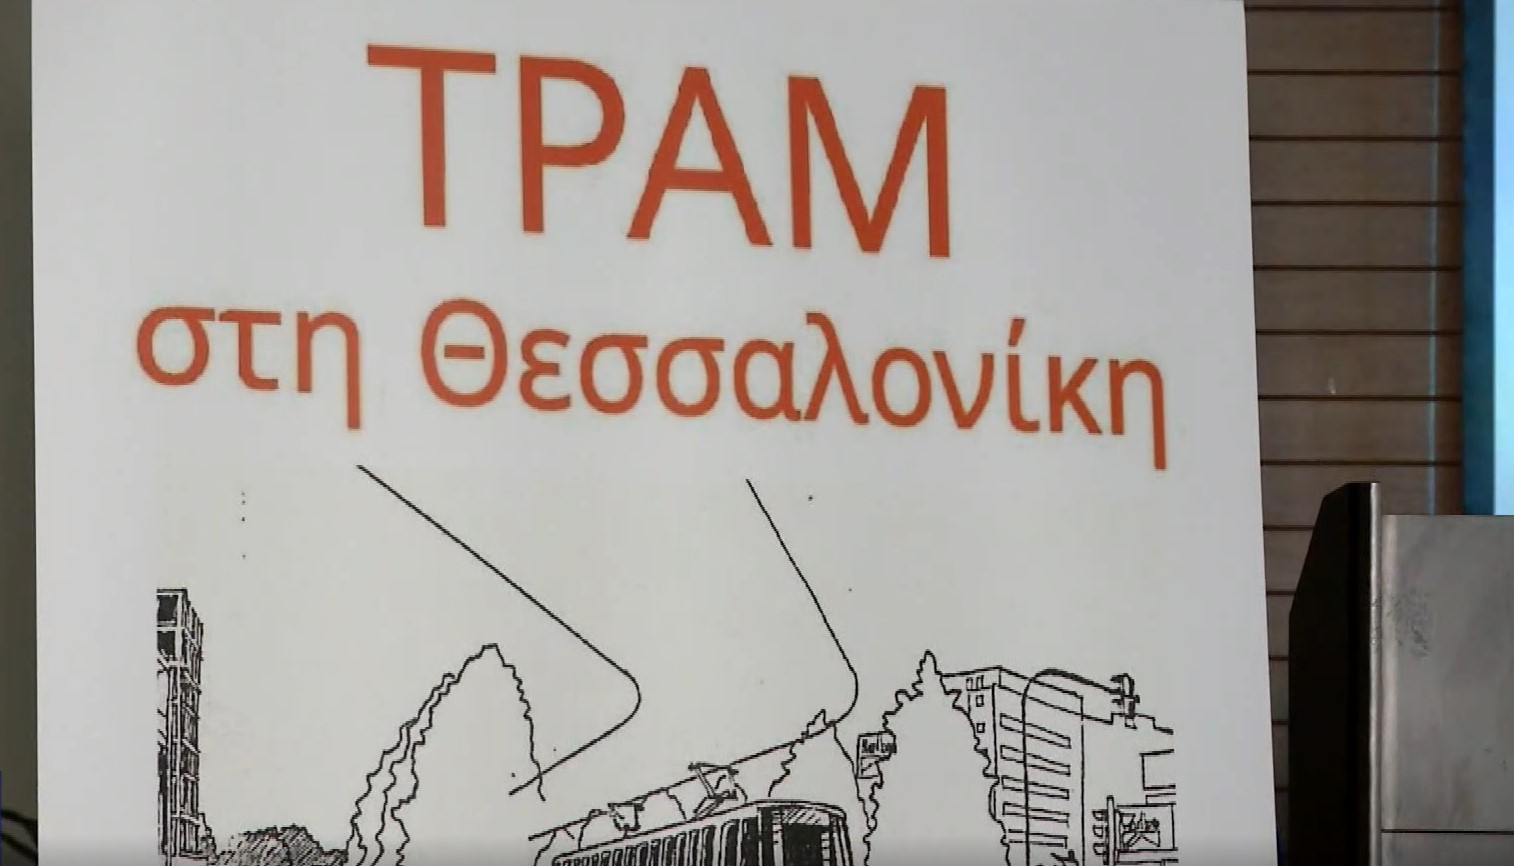 Θεσσαλονίκη: Εκδήλωση για την ιστορία και την προοπτική του τραμ